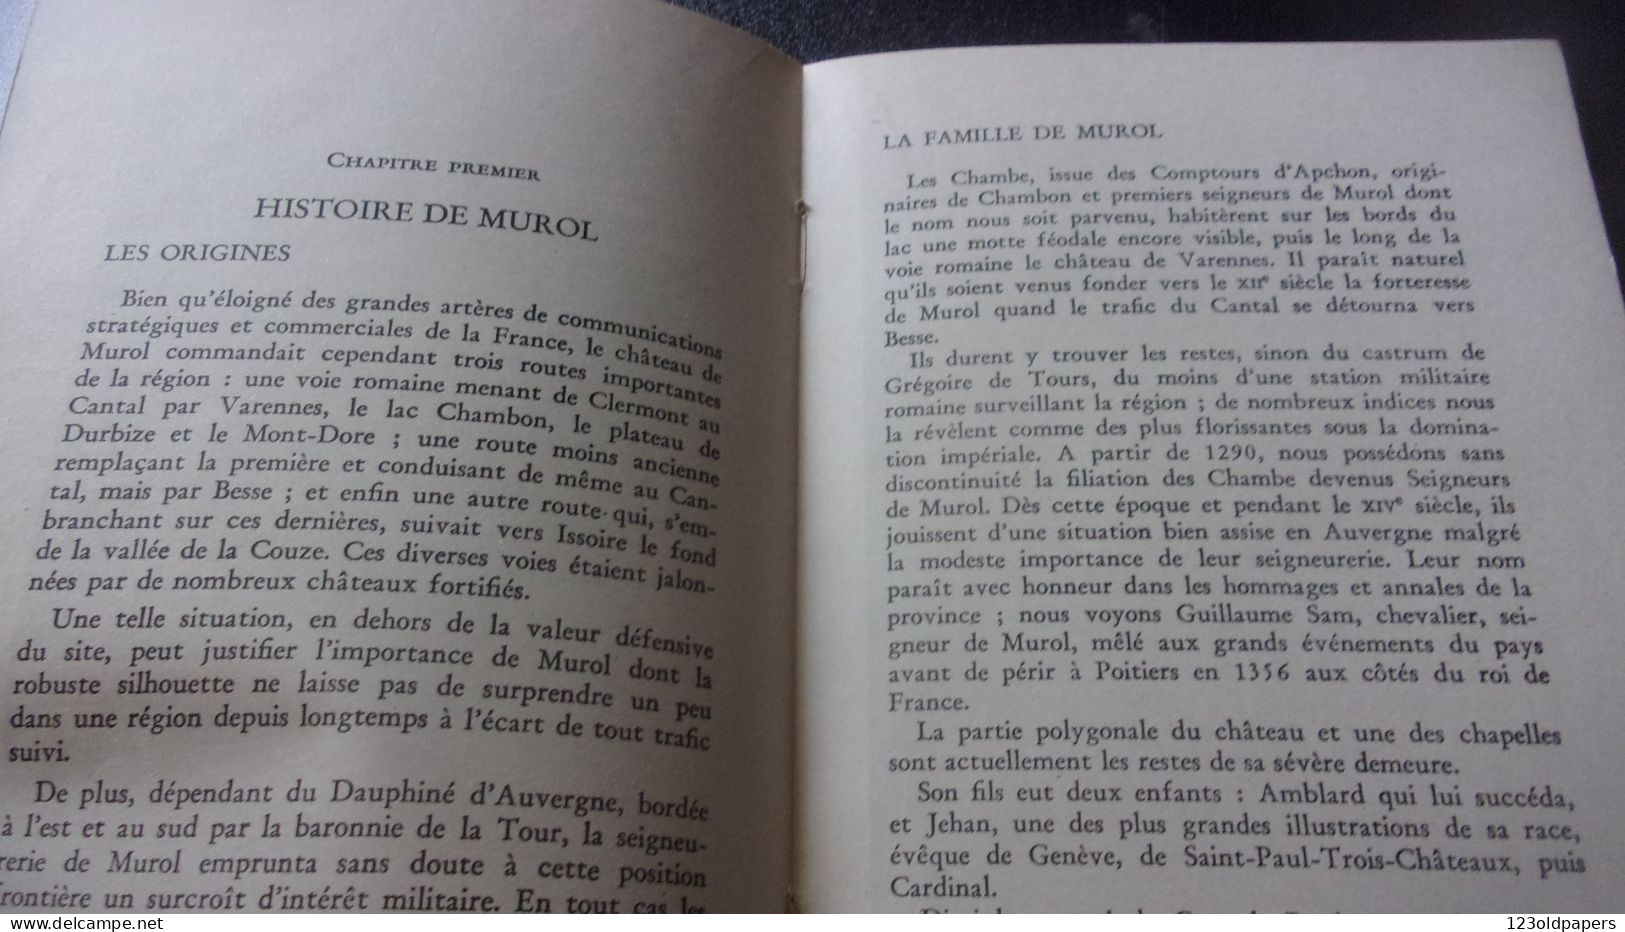 1955 MUROL LE CHATEAU ANDRE DU HALGOUET 100 PAGES  PLAN ET ILLUSTRATIONS - Auvergne